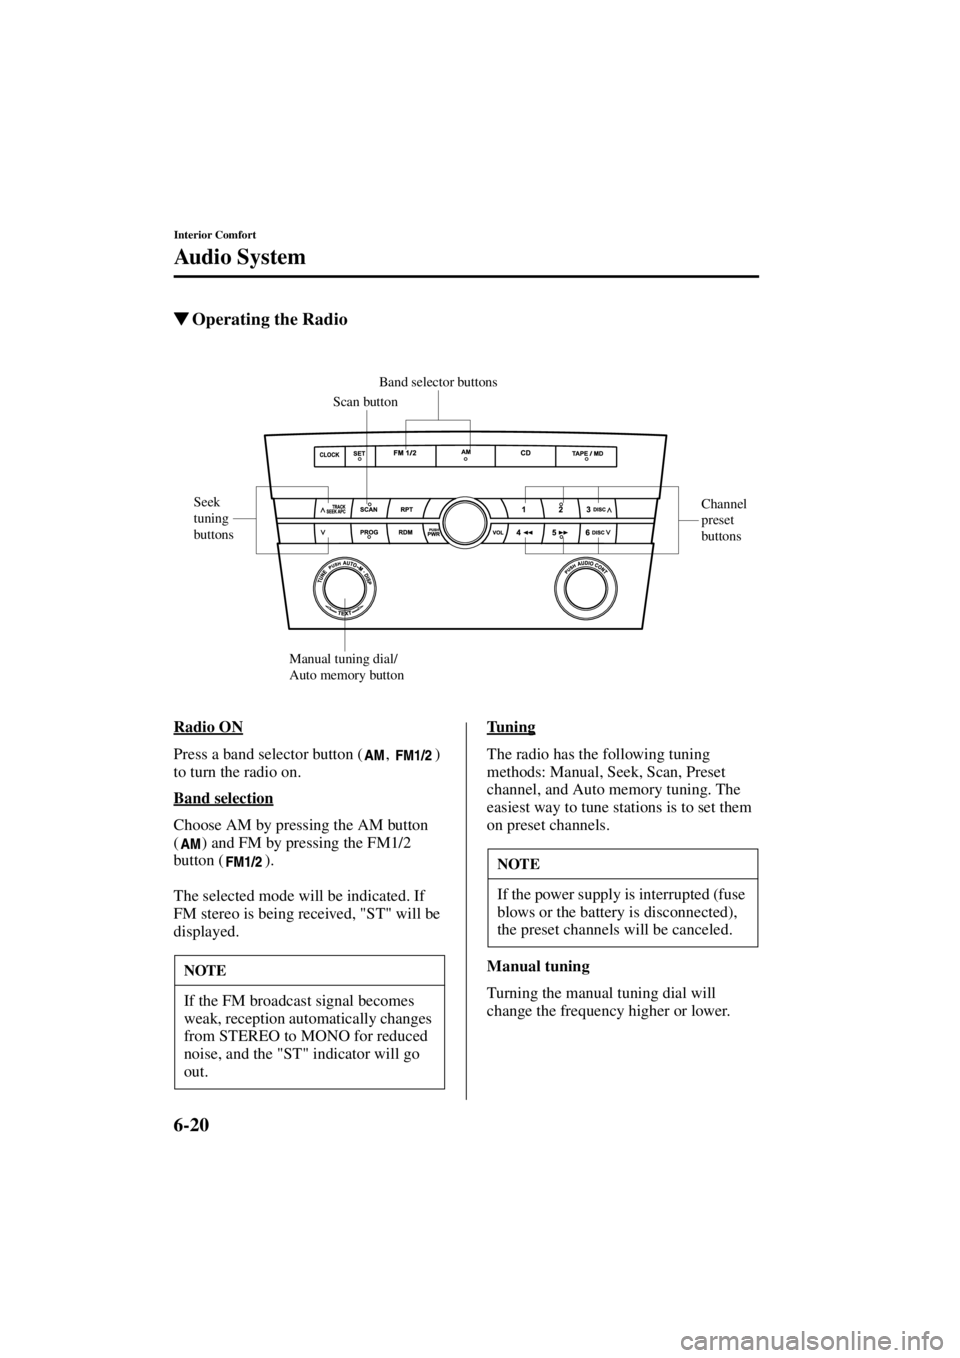 MAZDA MODEL 3 4-DOOR 2004  Owners Manual 6-20
Interior Comfort
Au di o S ys t em
Form No. 8S18-EA-03I
Operating the Radio
Radio ON
Press a band selector button ( ,  ) 
to turn the radio on.
Band selection
Choose AM by pressing the AM button